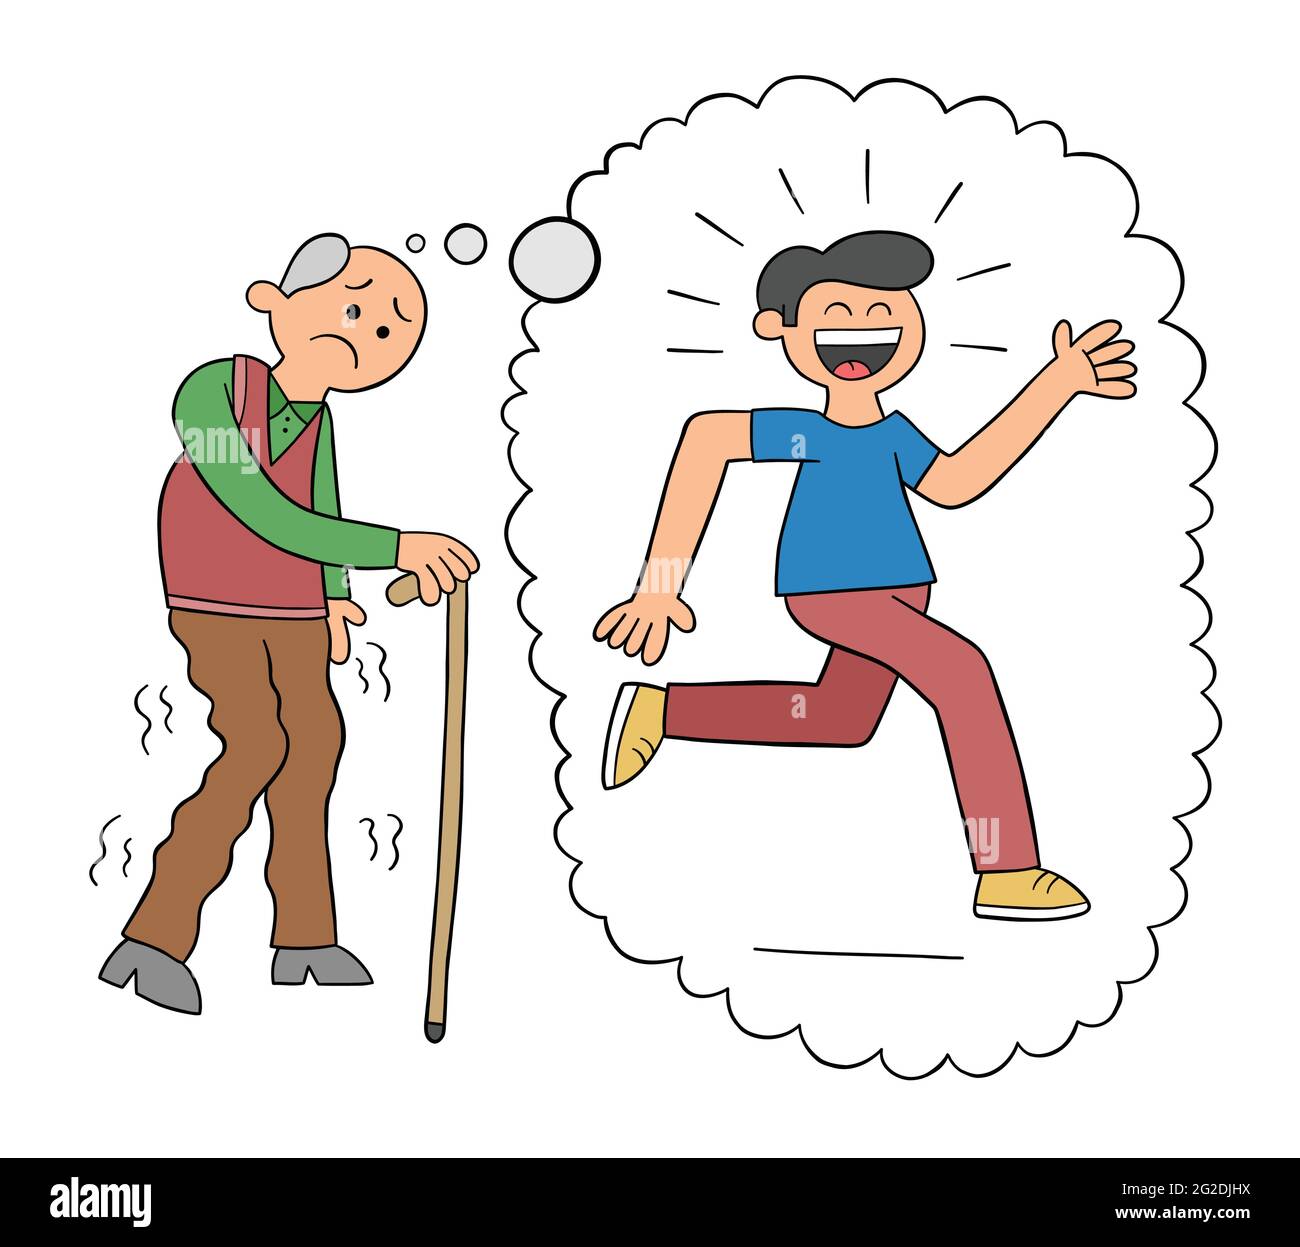 Cartoon alter Mann, der mit seinem Stock geht und von seiner Jugend träumt, Vektor-Illustration. Schwarz umrandet und farbig. Stock Vektor